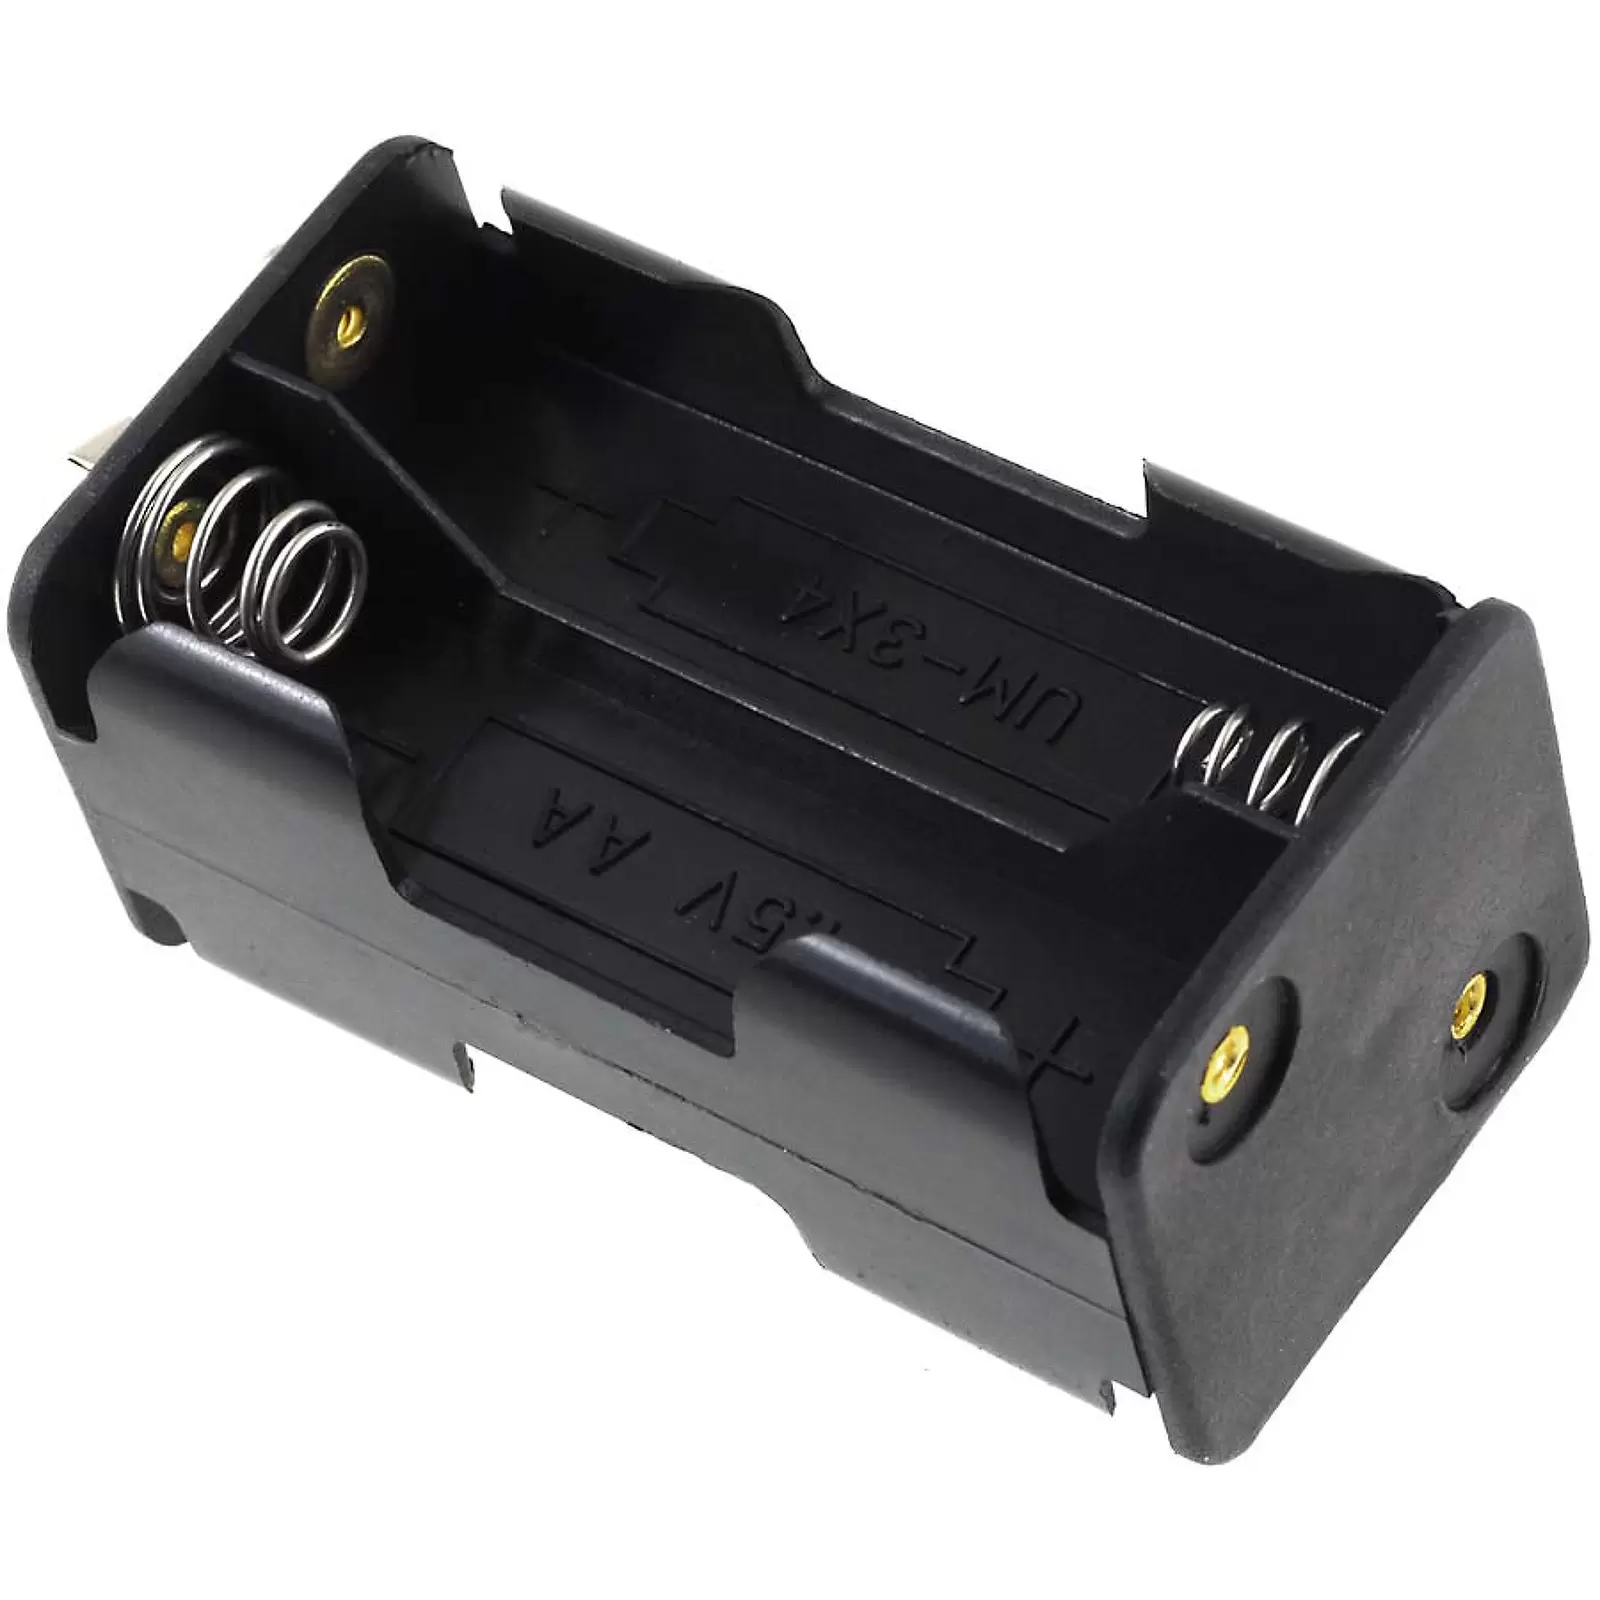 Batteriehalter für 4x Mignon/AA Batterien mit Clip-Anschluss